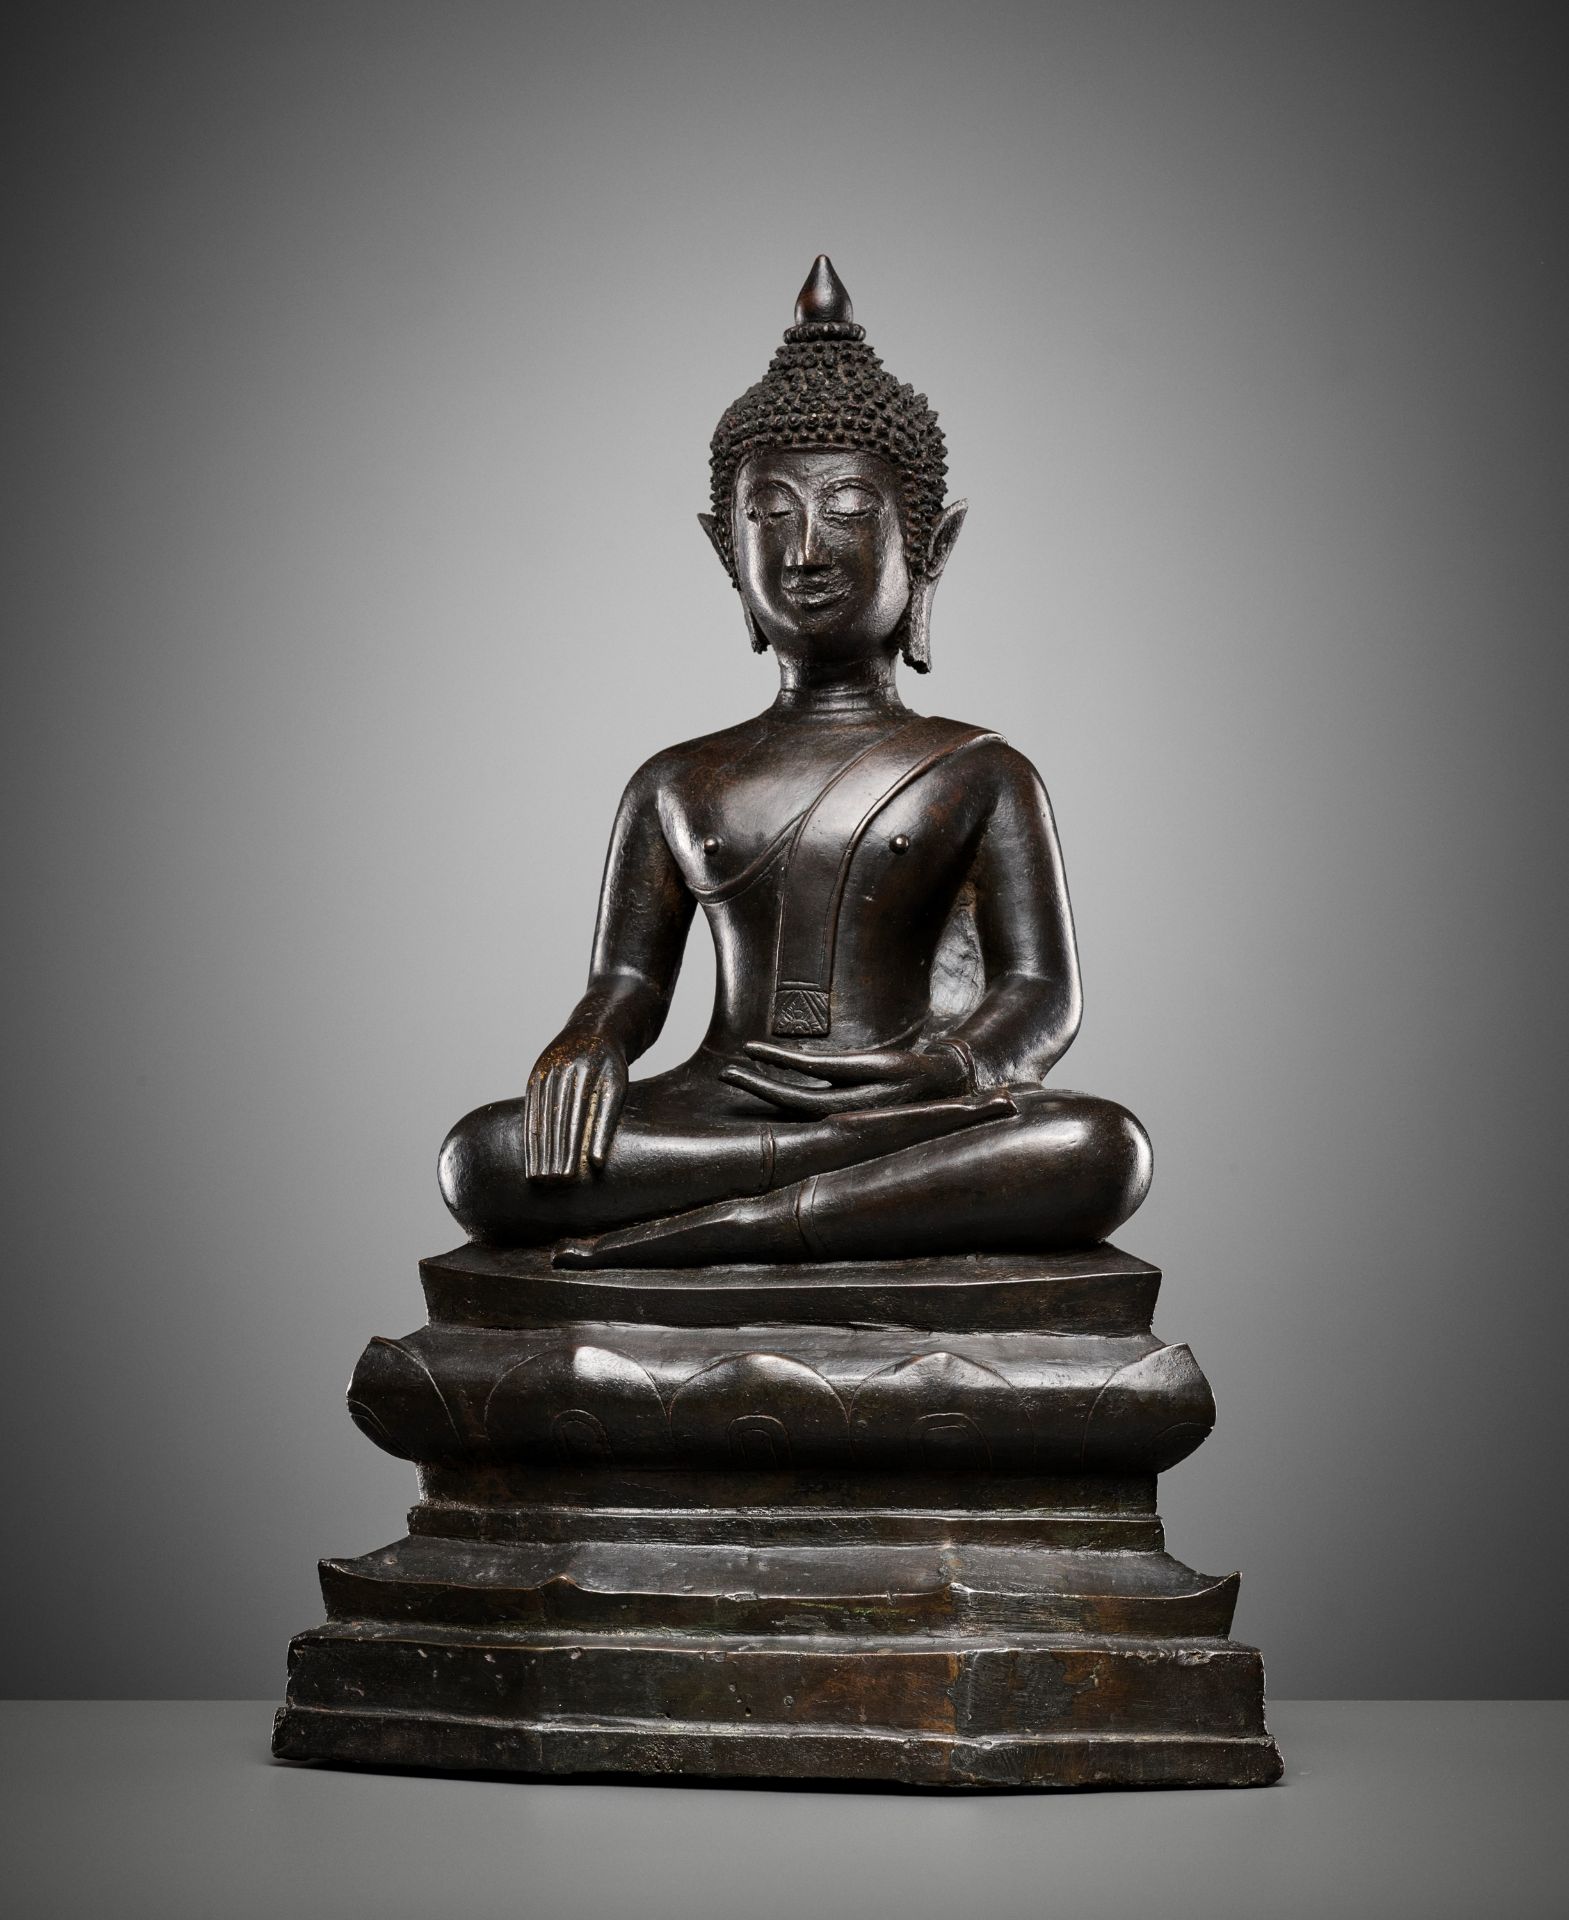 A BRONZE FIGURE OF BUDDHA SHAKYAMUNI, 16TH-17TH CENTURY